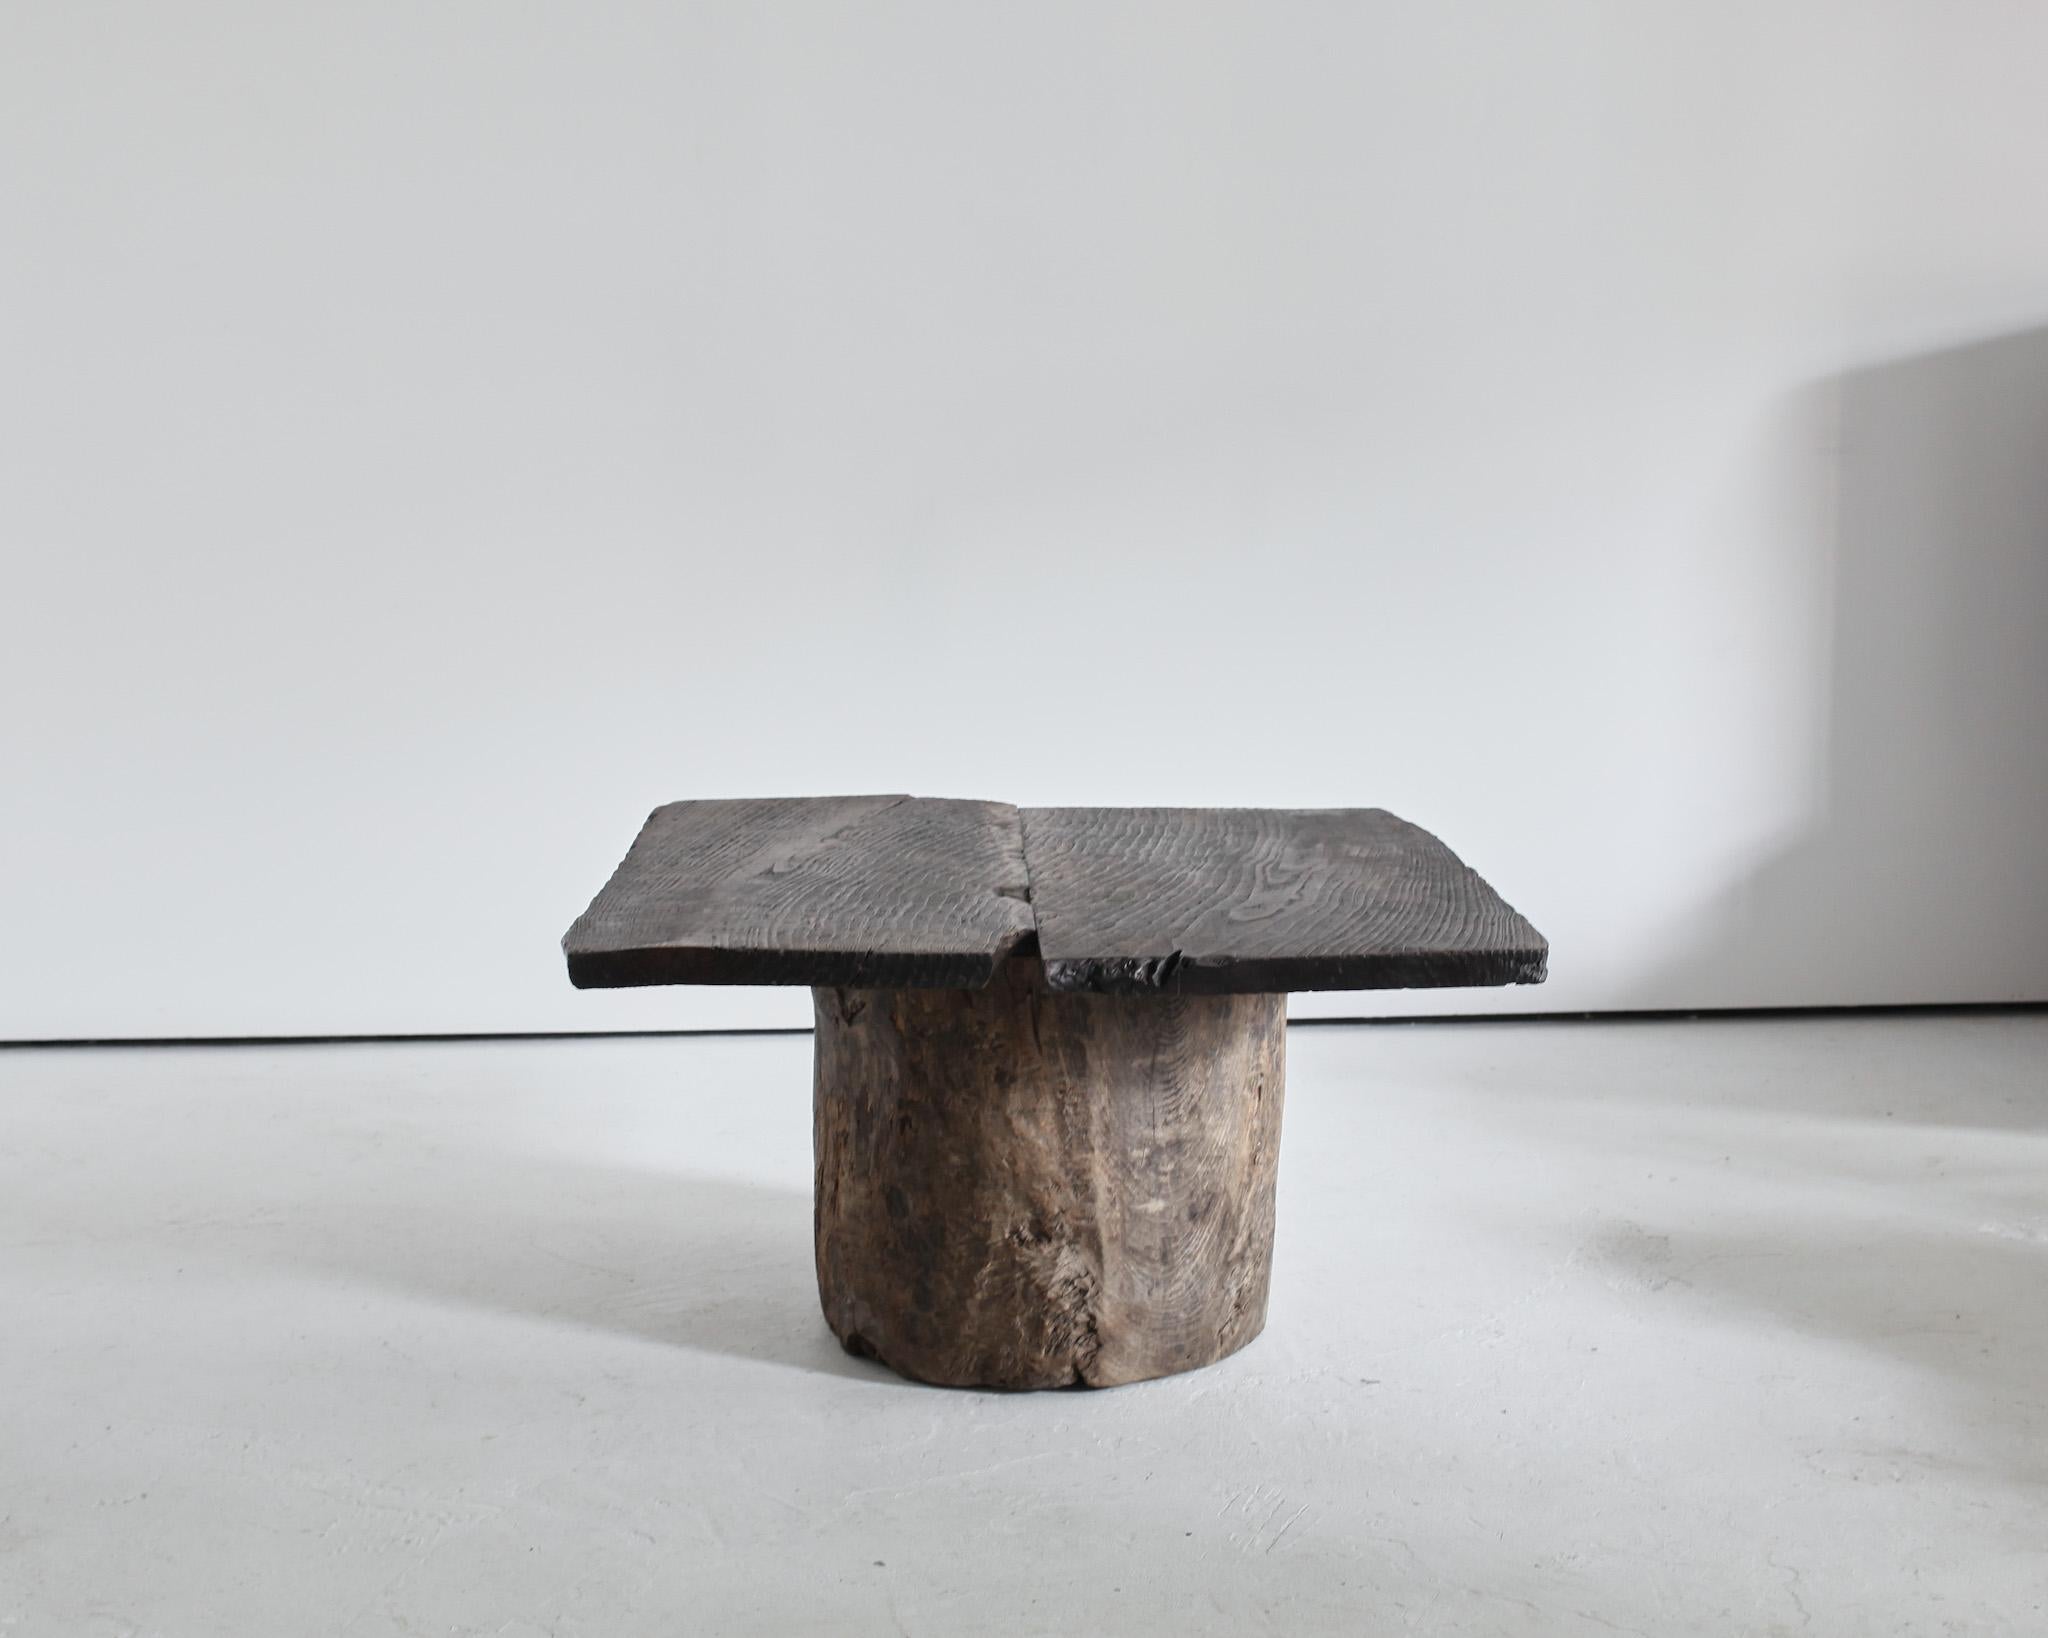 Une table basse japonaise unique et de grande taille.

Plateau en cèdre fortement patiné en deux parties sur une base en cèdre creusée fortement patinée.

Fabriqué à partir d'éléments japonais du C.I.C. dans notre atelier de Londres.